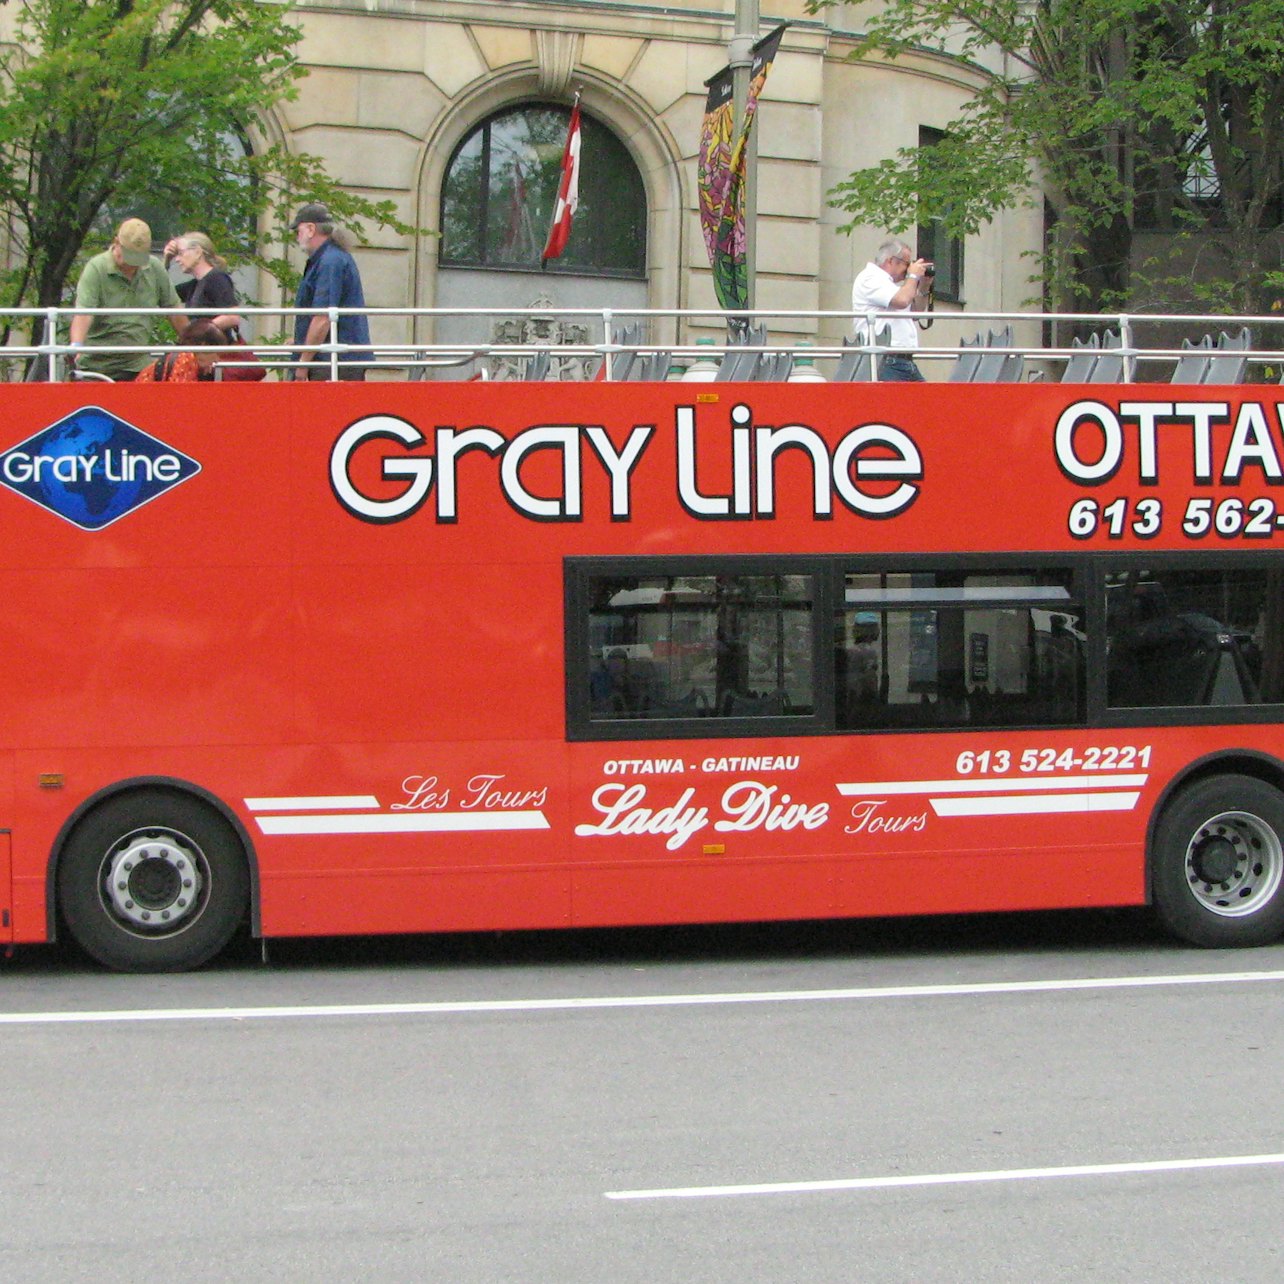 Ottawa City Tour: Bus turístico - Alojamientos en Ottawa